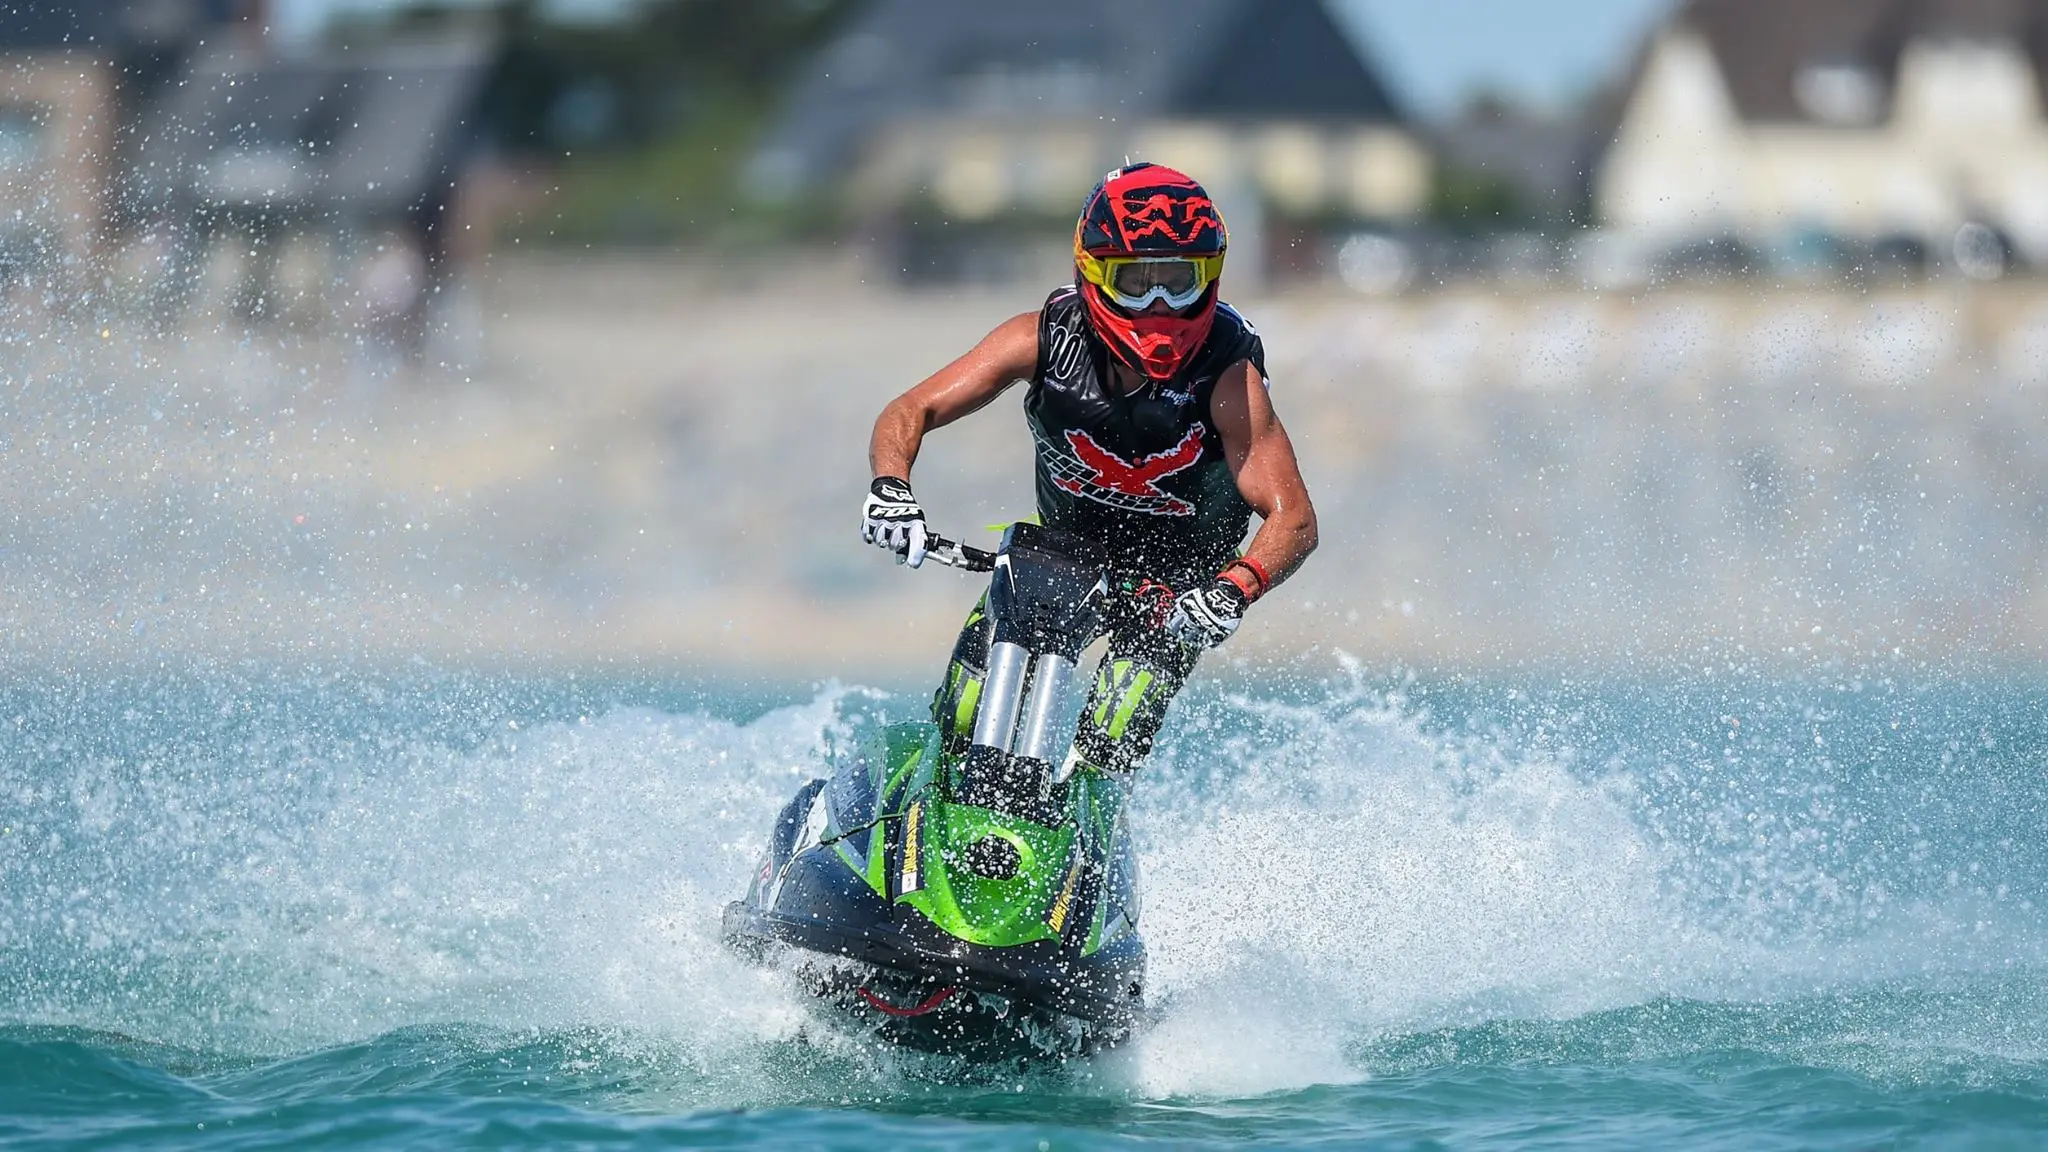 carreras de motos de agua - Cómo se llama el deporte de la moto de agua